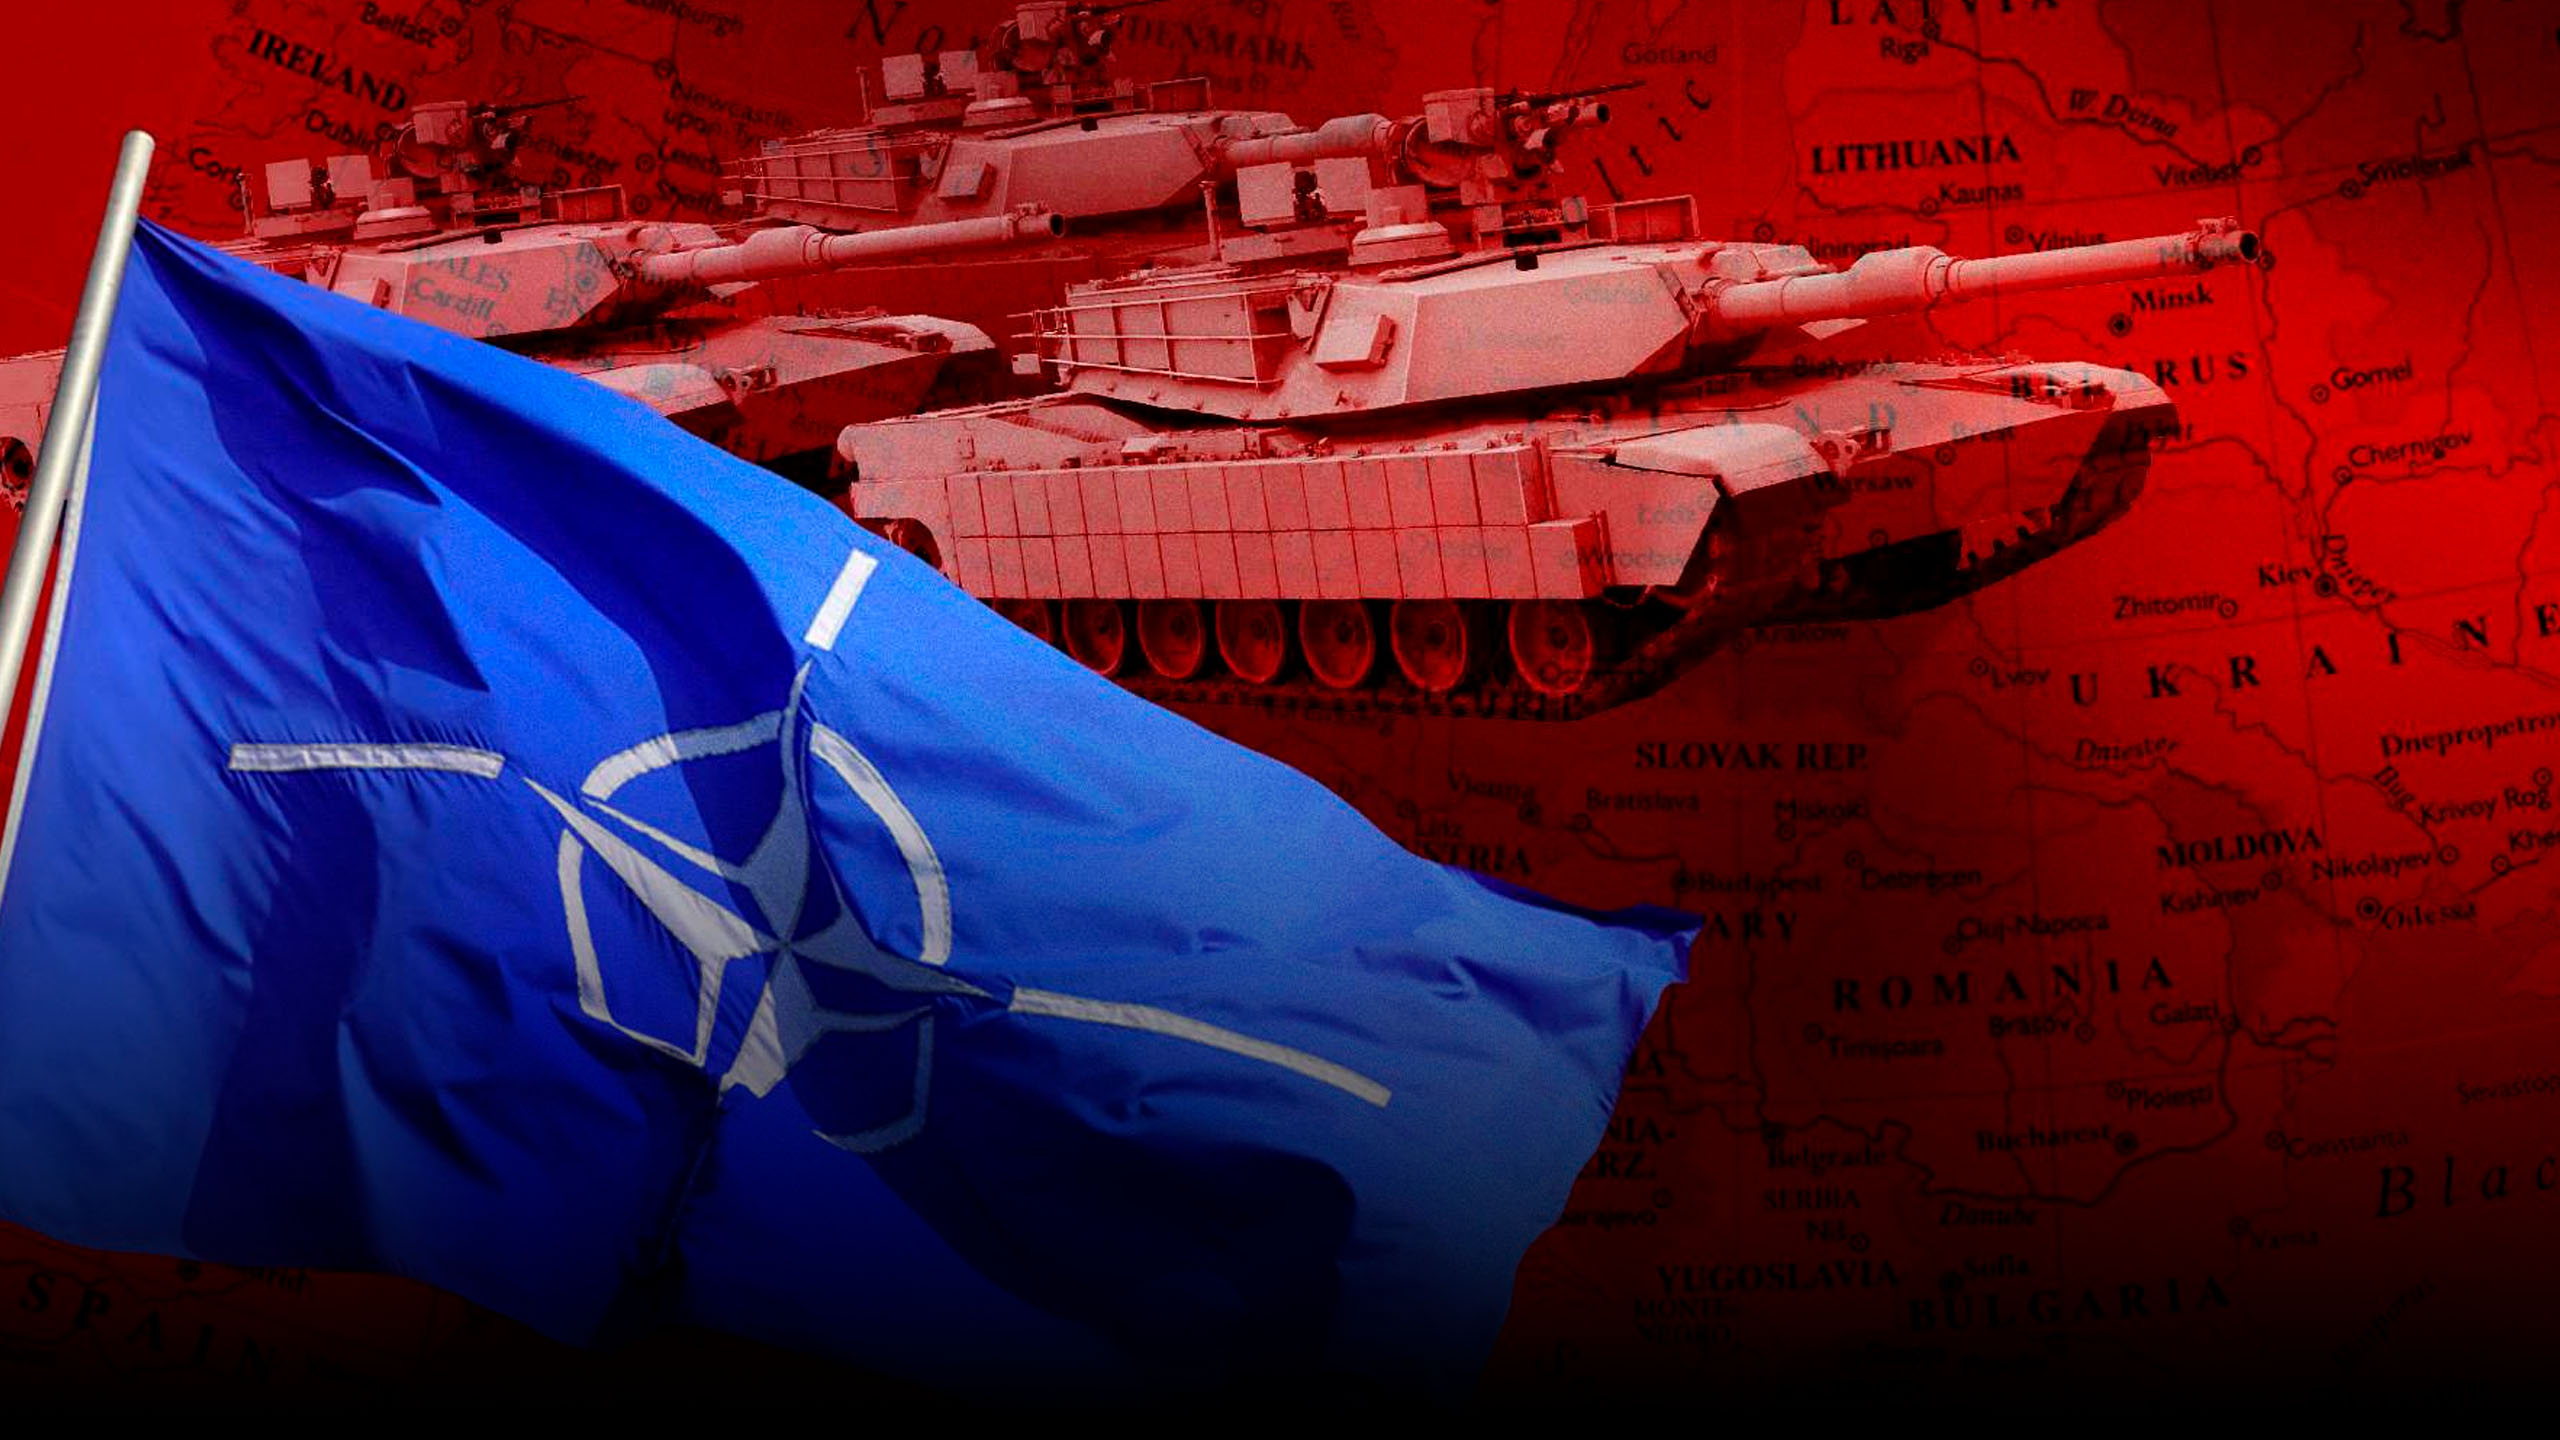 Натовских танков на Украине не будет / РЕН Новости